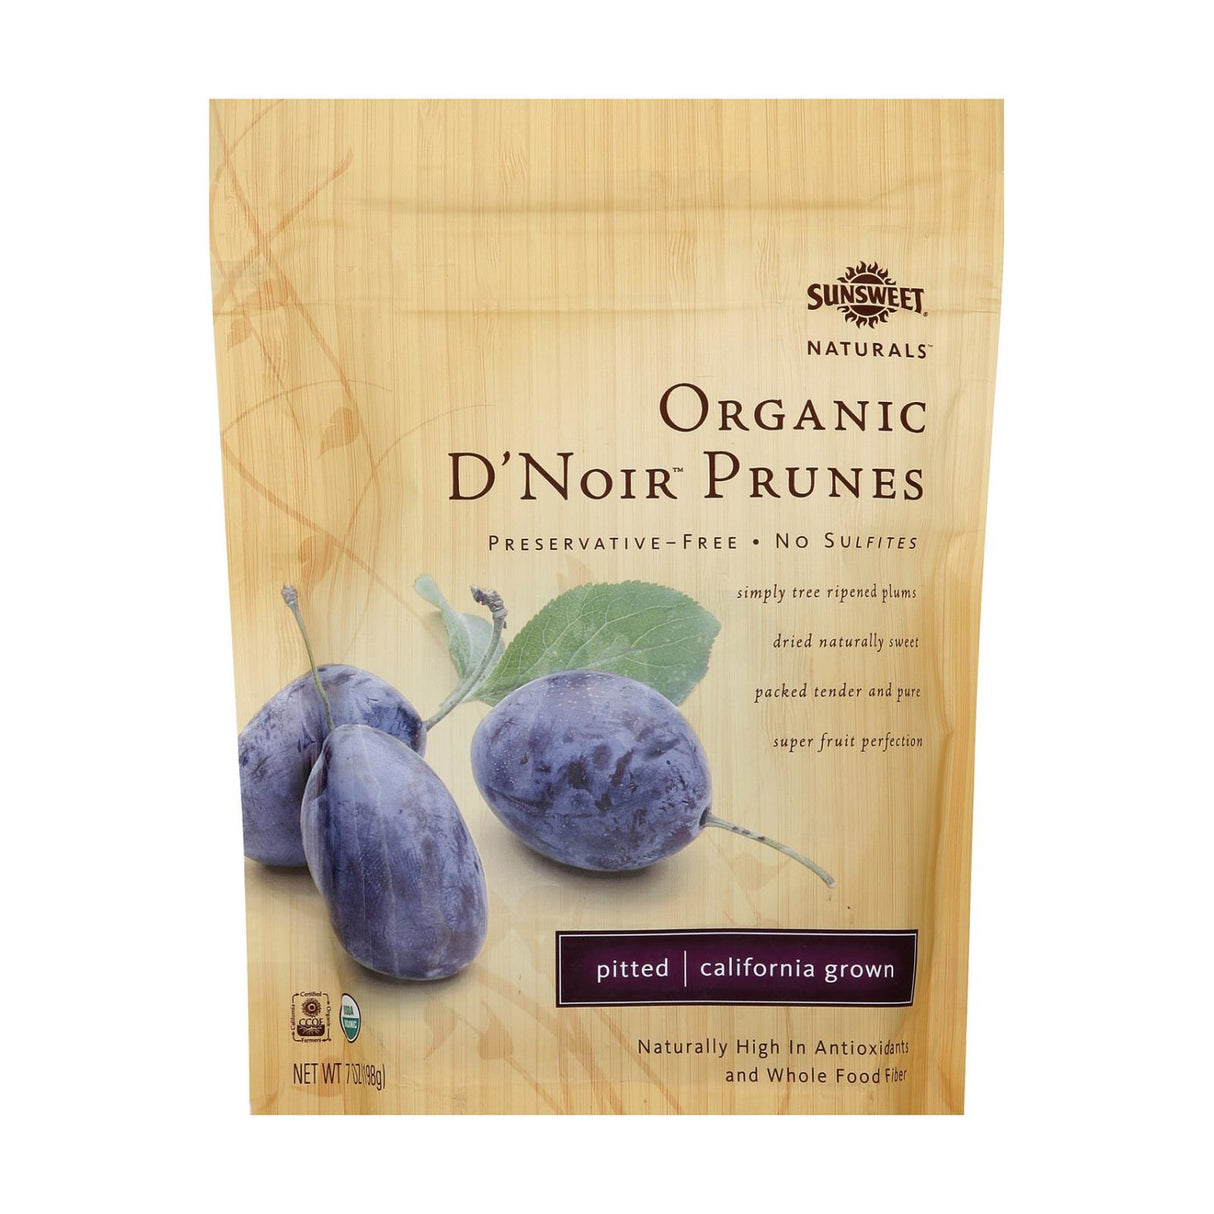 Sunsweet Naturals Organic D'Noir Prunes, 12 Pack, 7 Oz. Each - Cozy Farm 